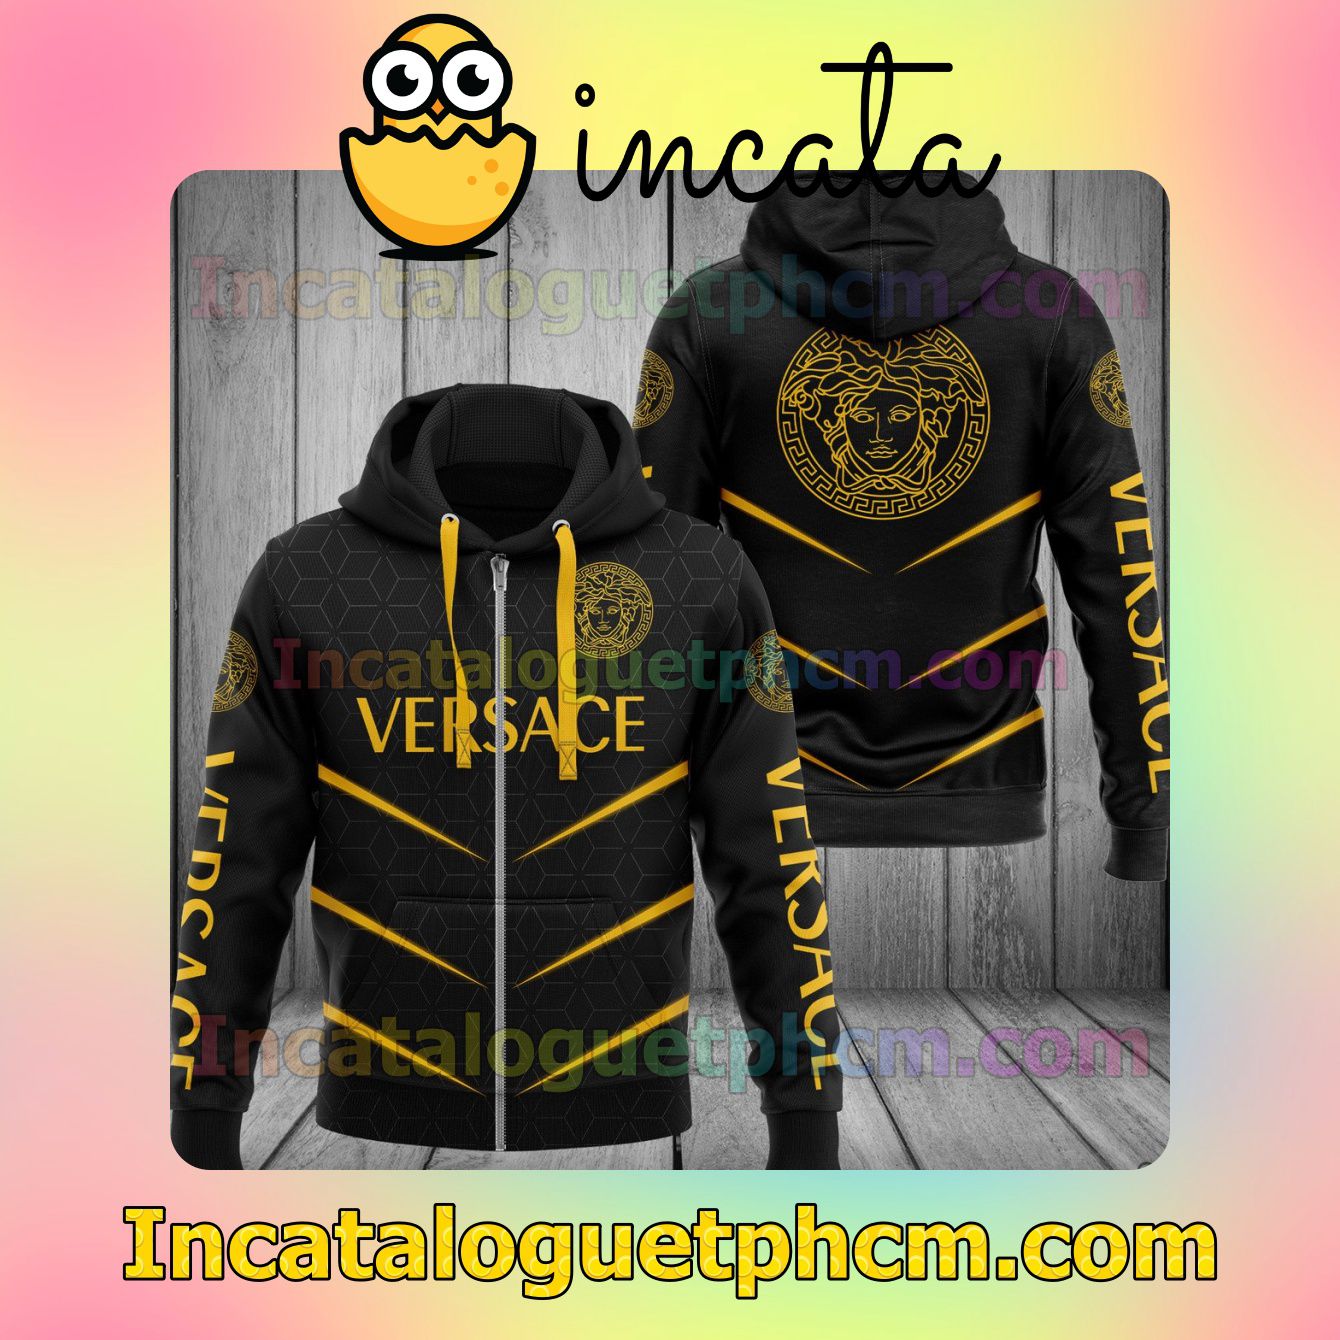 Discount Versace Brand Name And Logo Metro Rhombus Black Long Sleeve Jacket Mens Hoodie